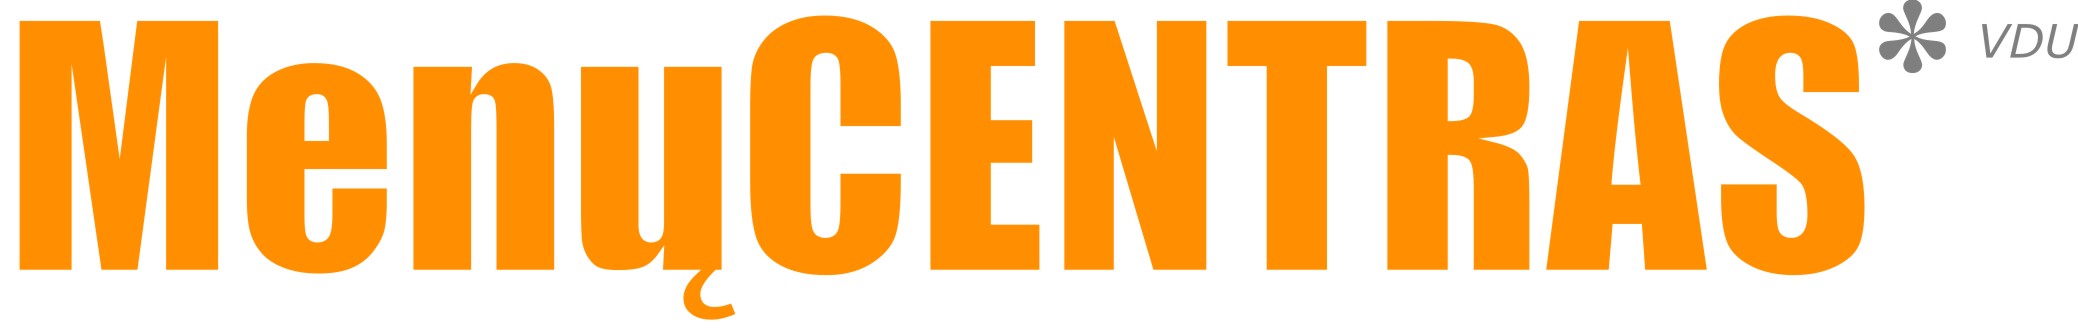 vdu_menu_centras_logo